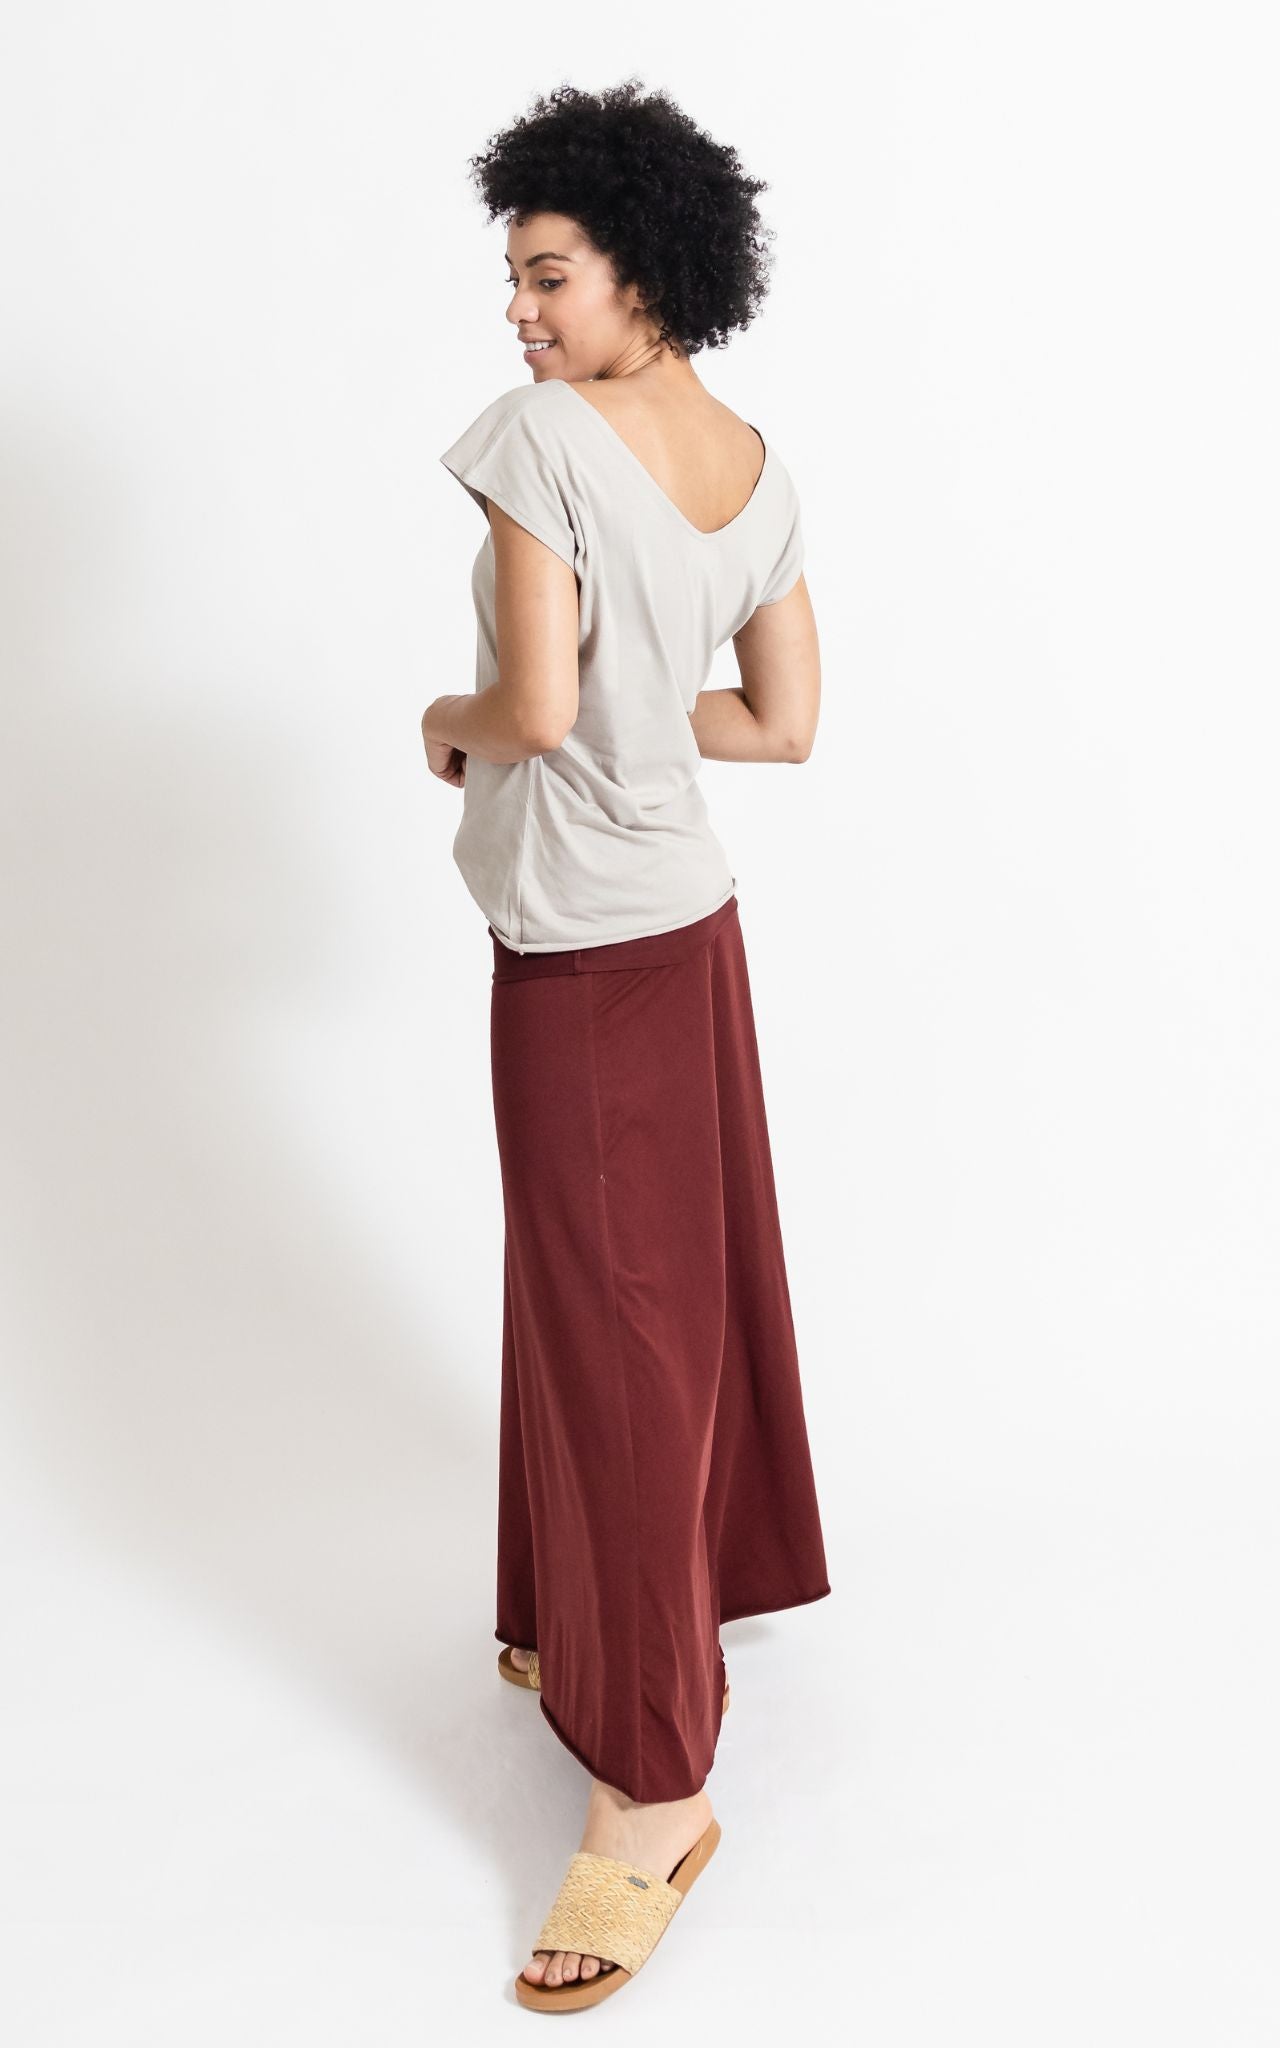 Surya Australia Organic Cotton Maxi 'Sonder' Skirt made in Nepal - Berry